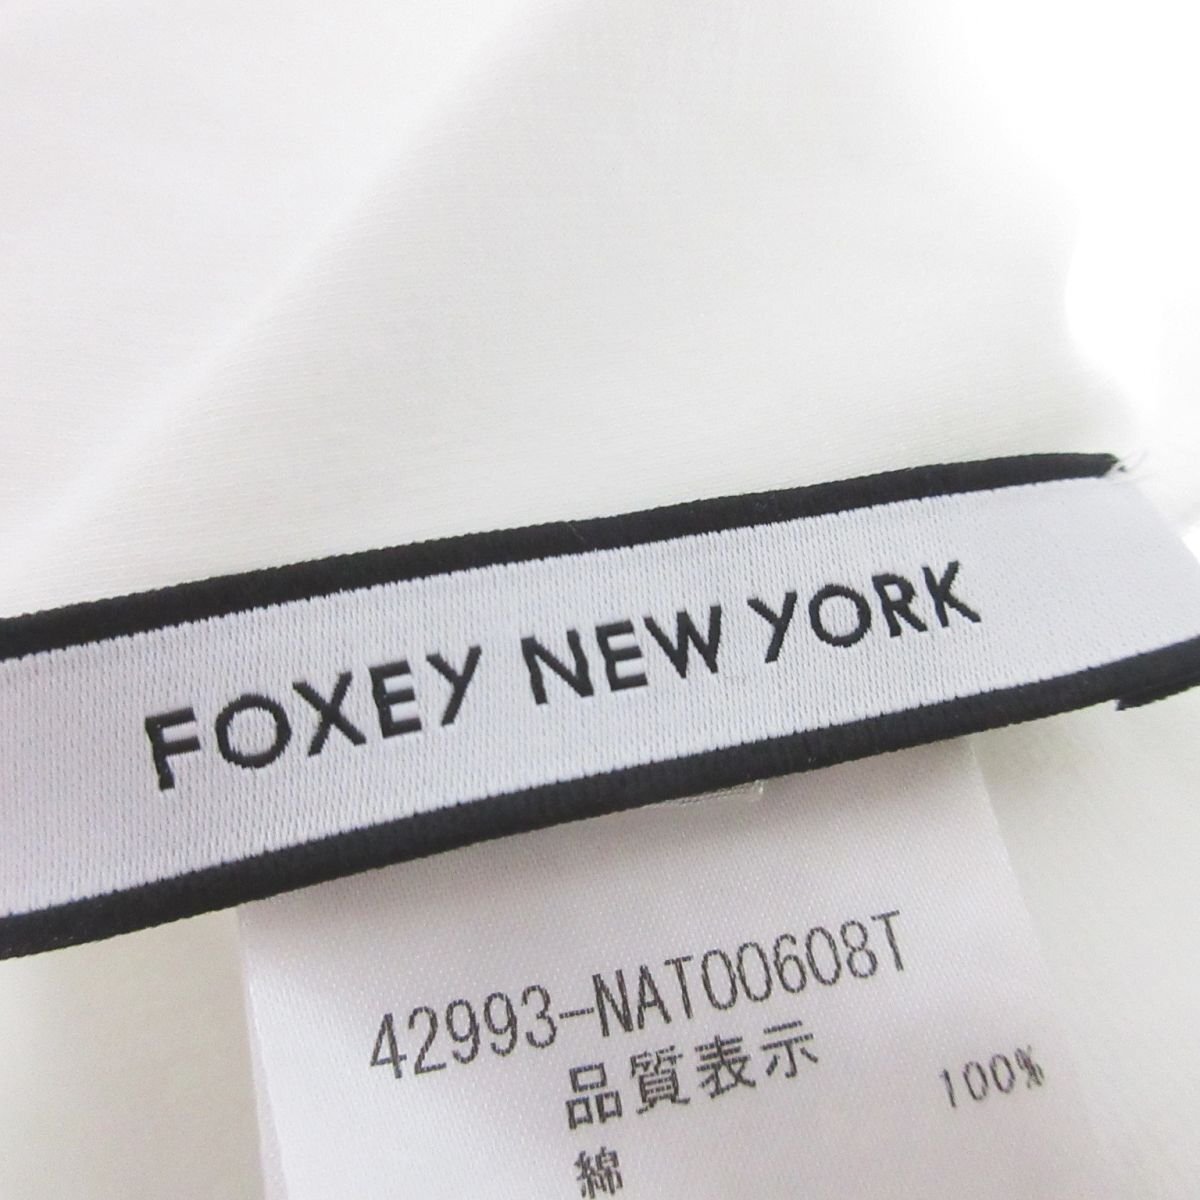 新品同様 22SS FOXEY NEW YORK フォクシーニューヨーク Le Cadeau Top リボン付き 半袖 Tシャツ カットソー 42993 40 ホワイト ◆の画像4